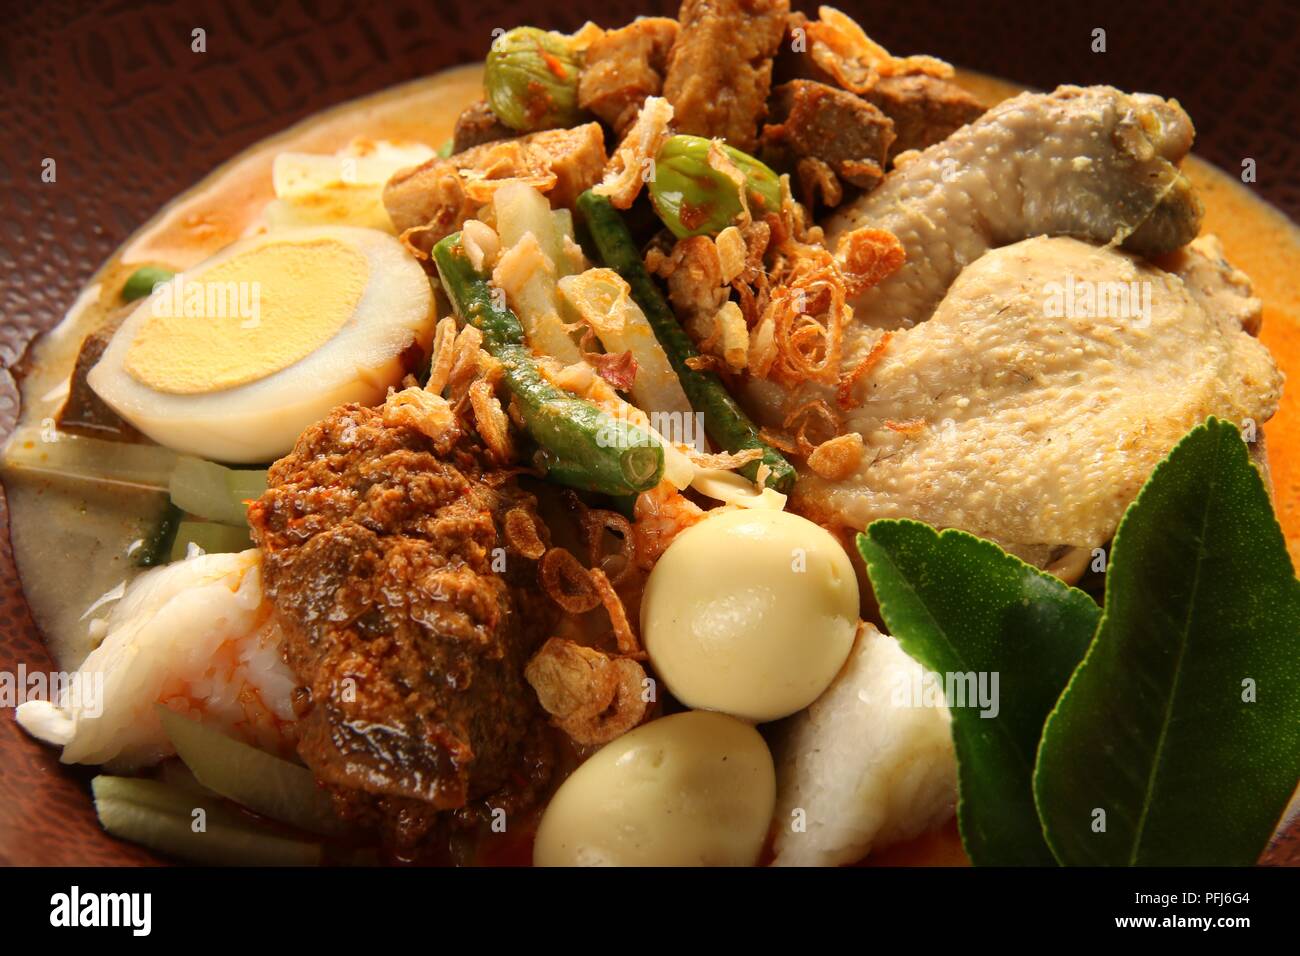 Ketupat Lebaran, die traditionelle feierliche Reisgericht mit Kuchen mit mehreren Beilagen; beliebt während Eid feiern. Stockfoto